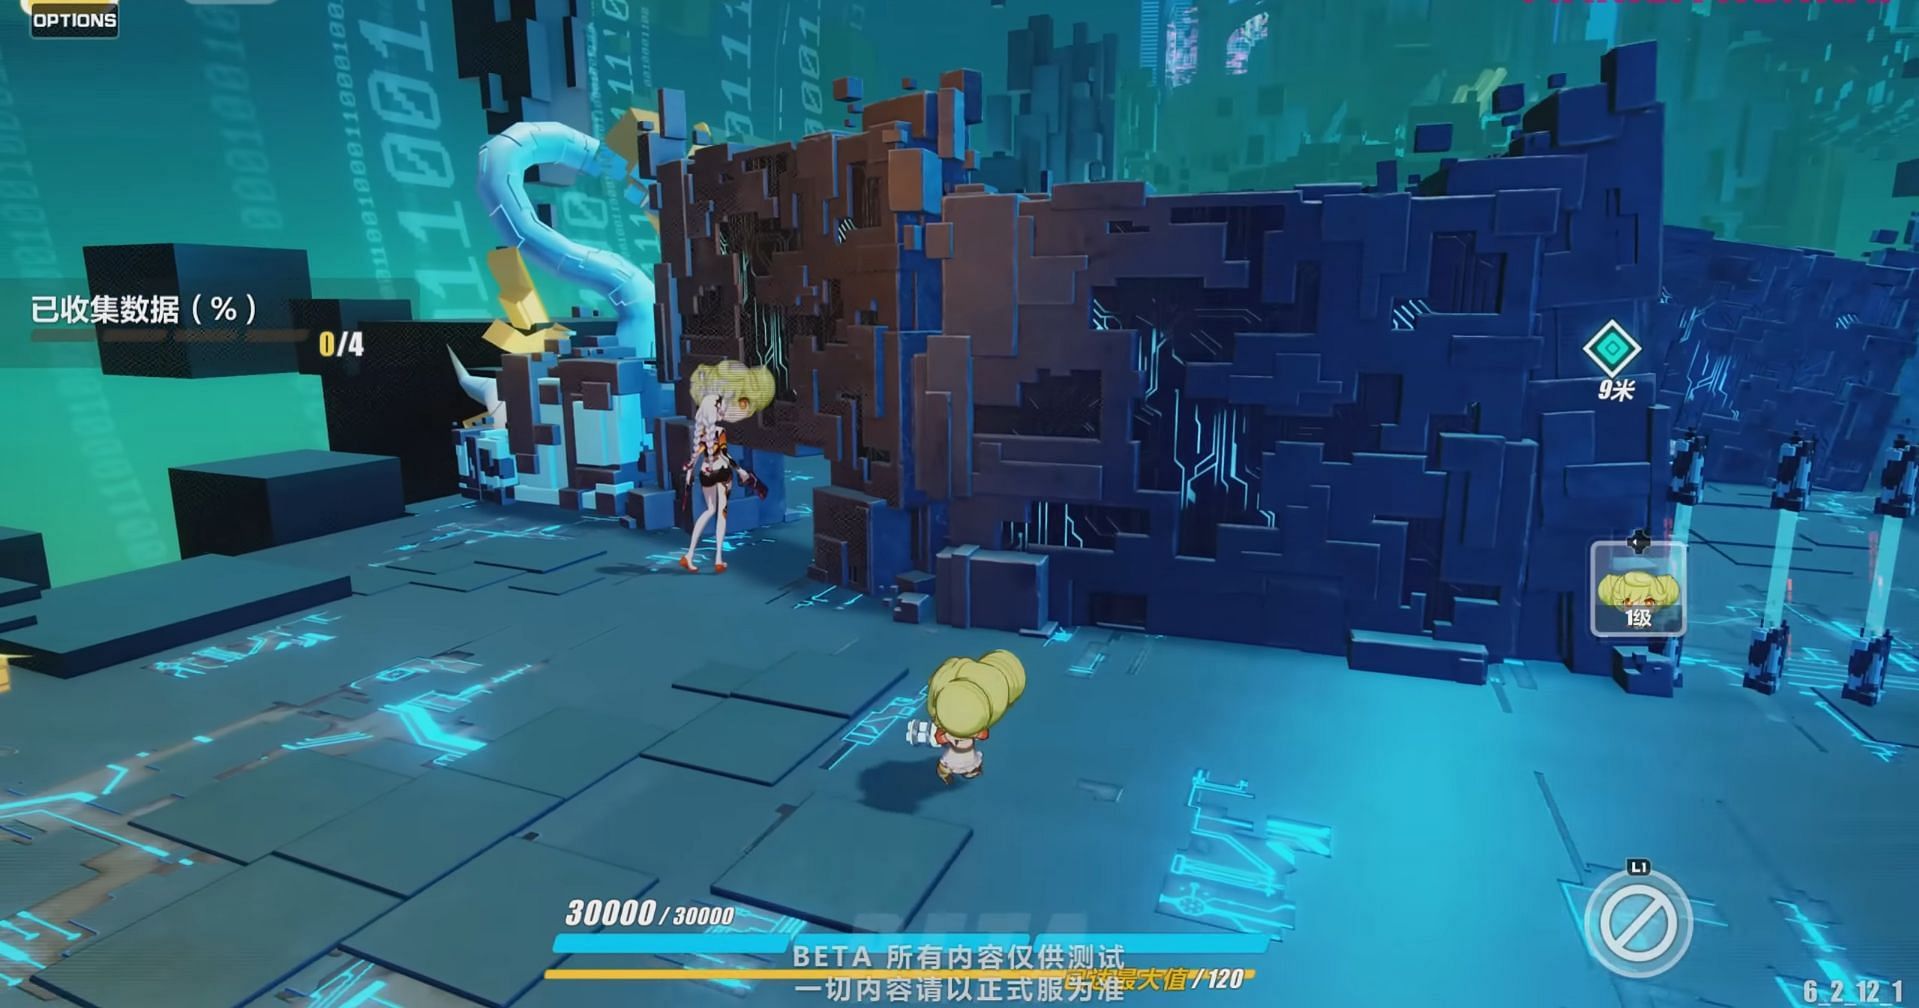 Event gameplay (Image via Honkai Impact 3rd)